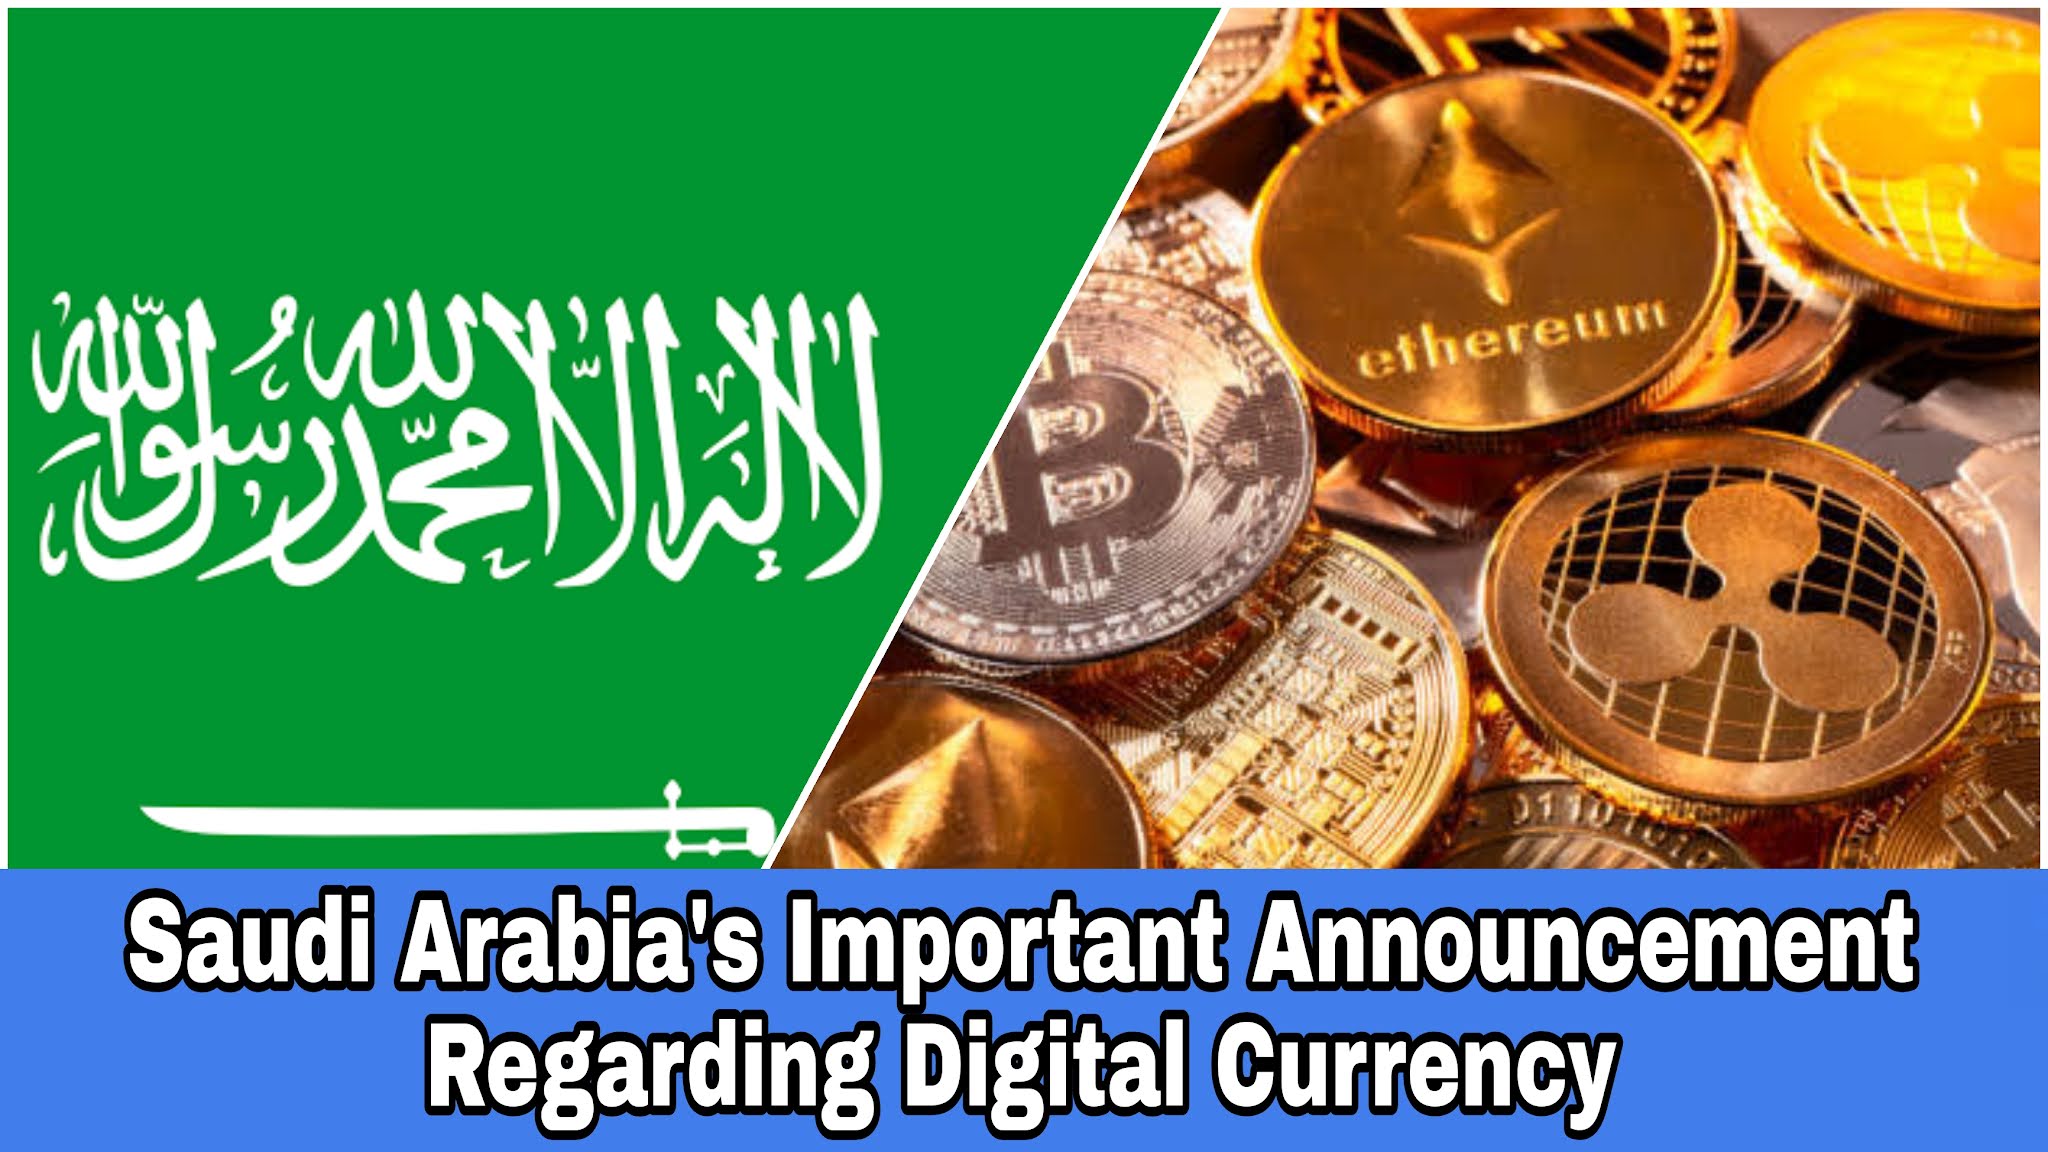 Saudi Arabia's Important Announcement Regarding Digital Currency